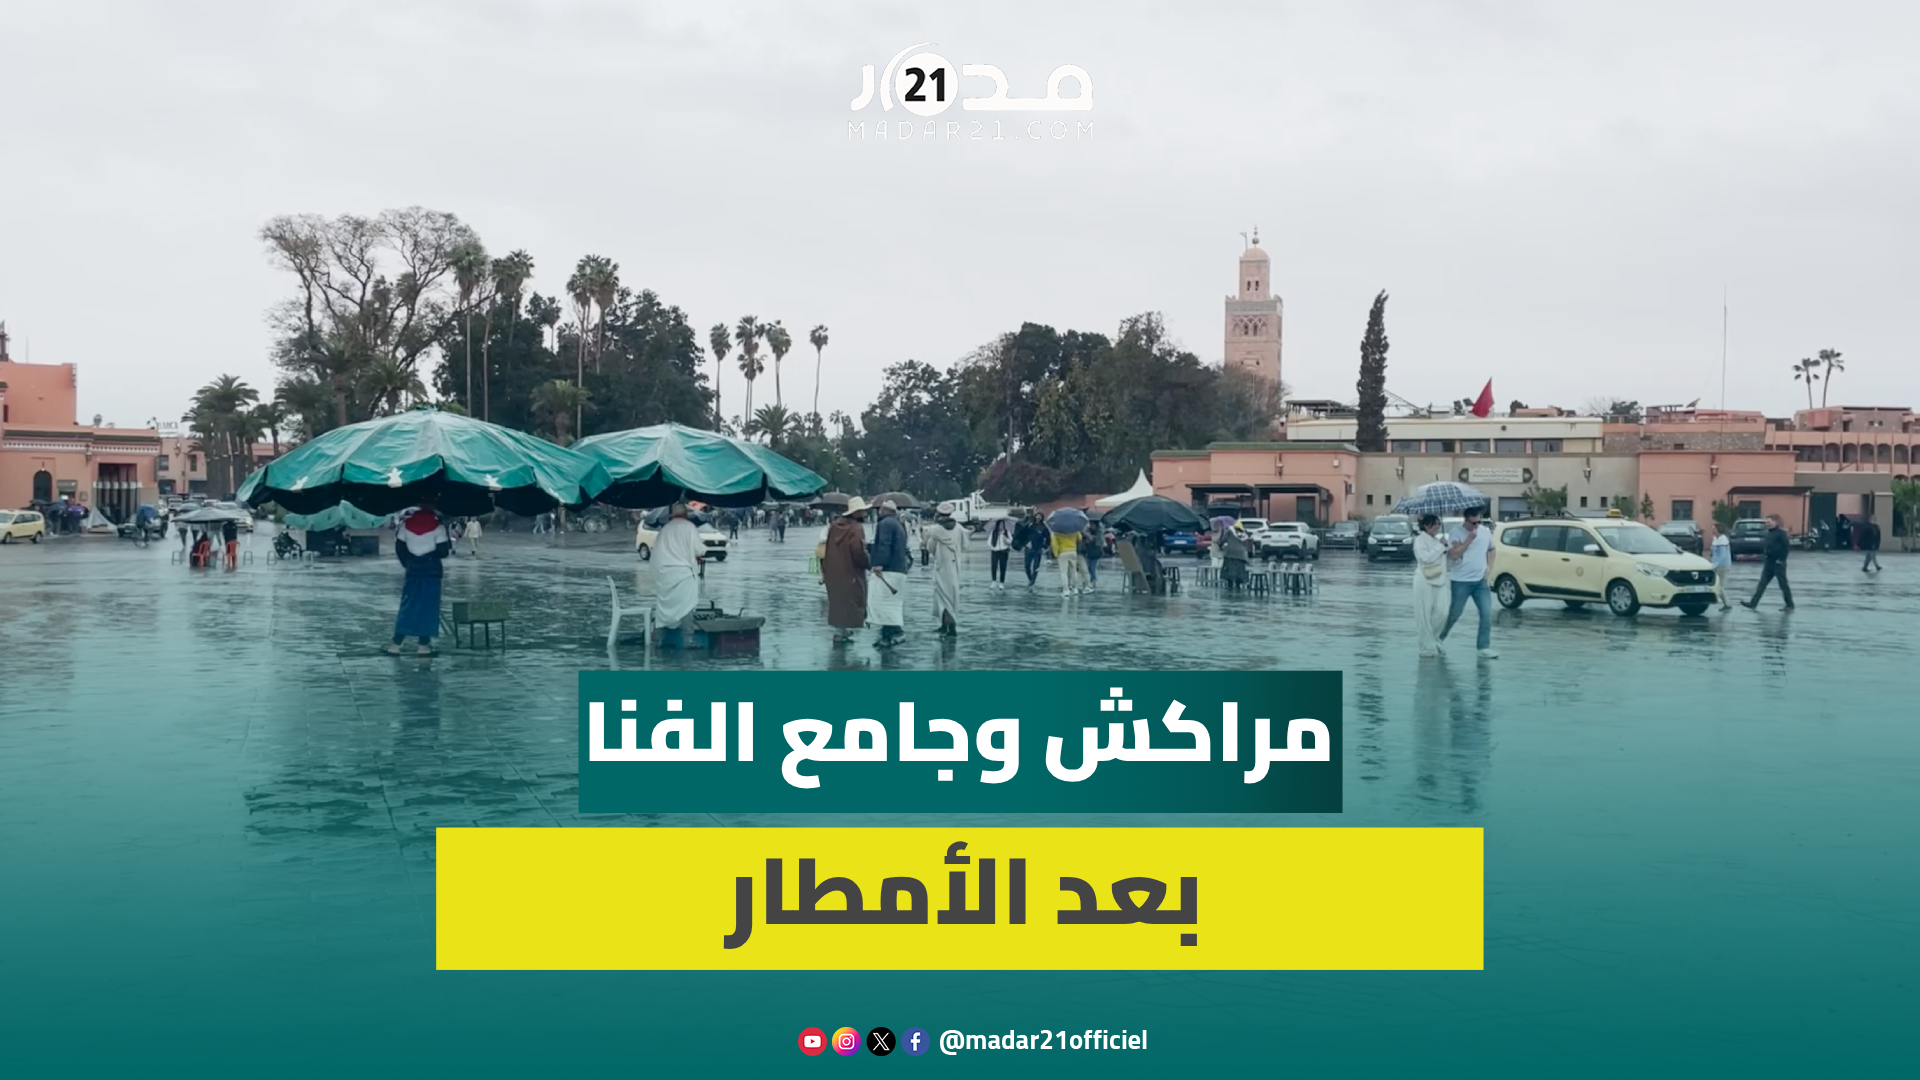 جولة في شوارع مراكش بعد التساقطات المطرية الأخيرة وهكذا أصبحت الأجواء بساحة جامع الفنا